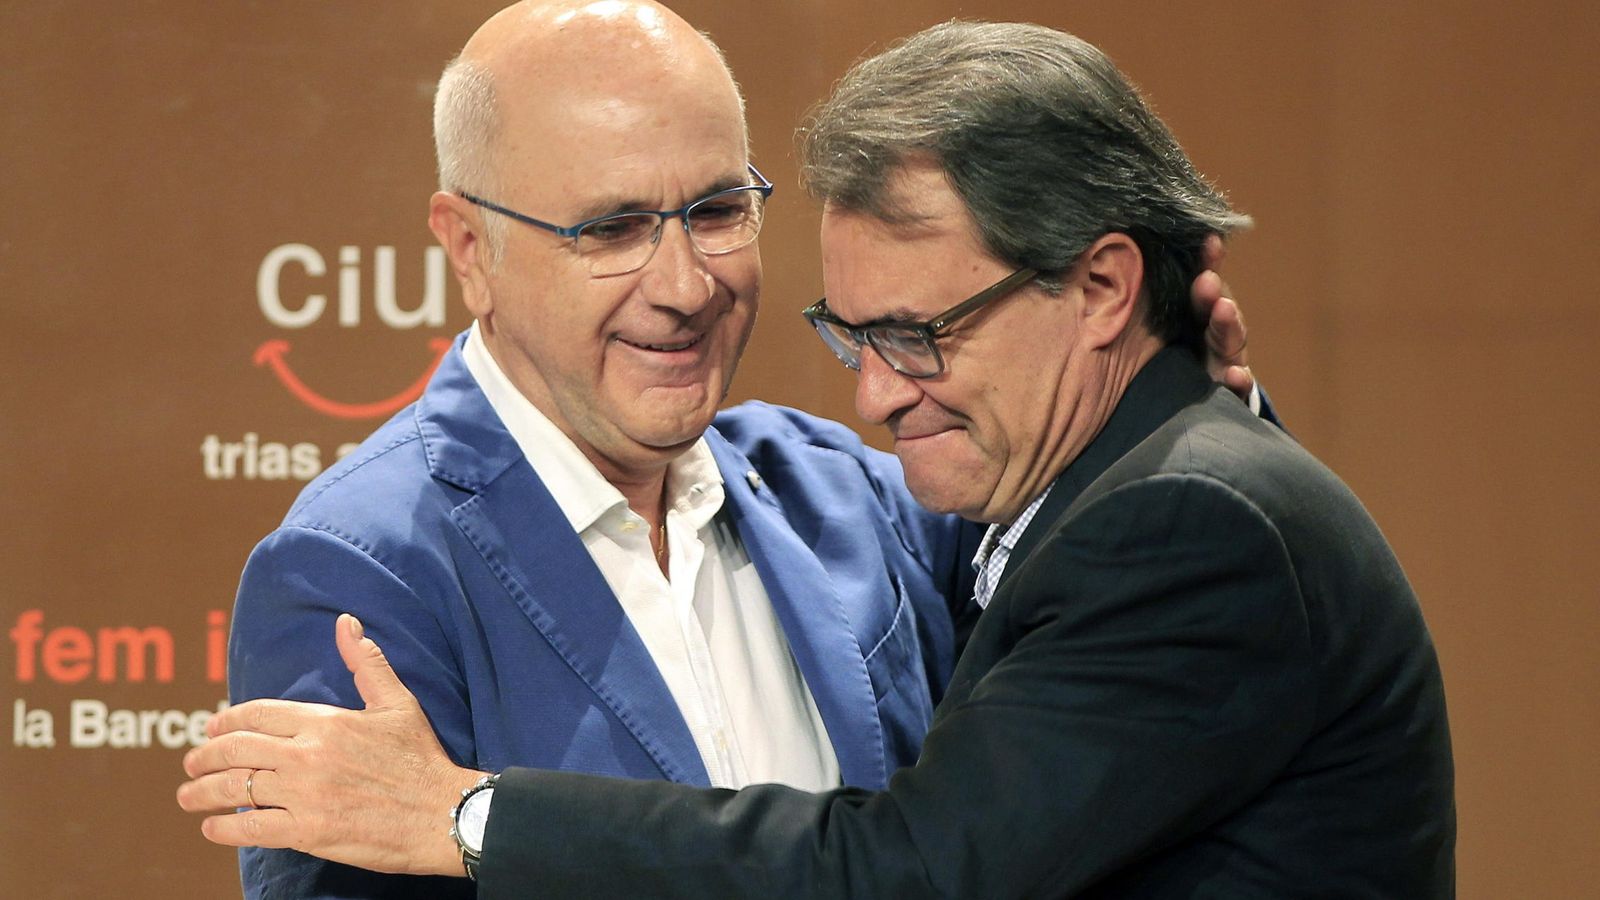 Foto: El presidente catalán, Artur Mas y el líder de UDC, Josep Antoni Duran Lleida. (Efe)